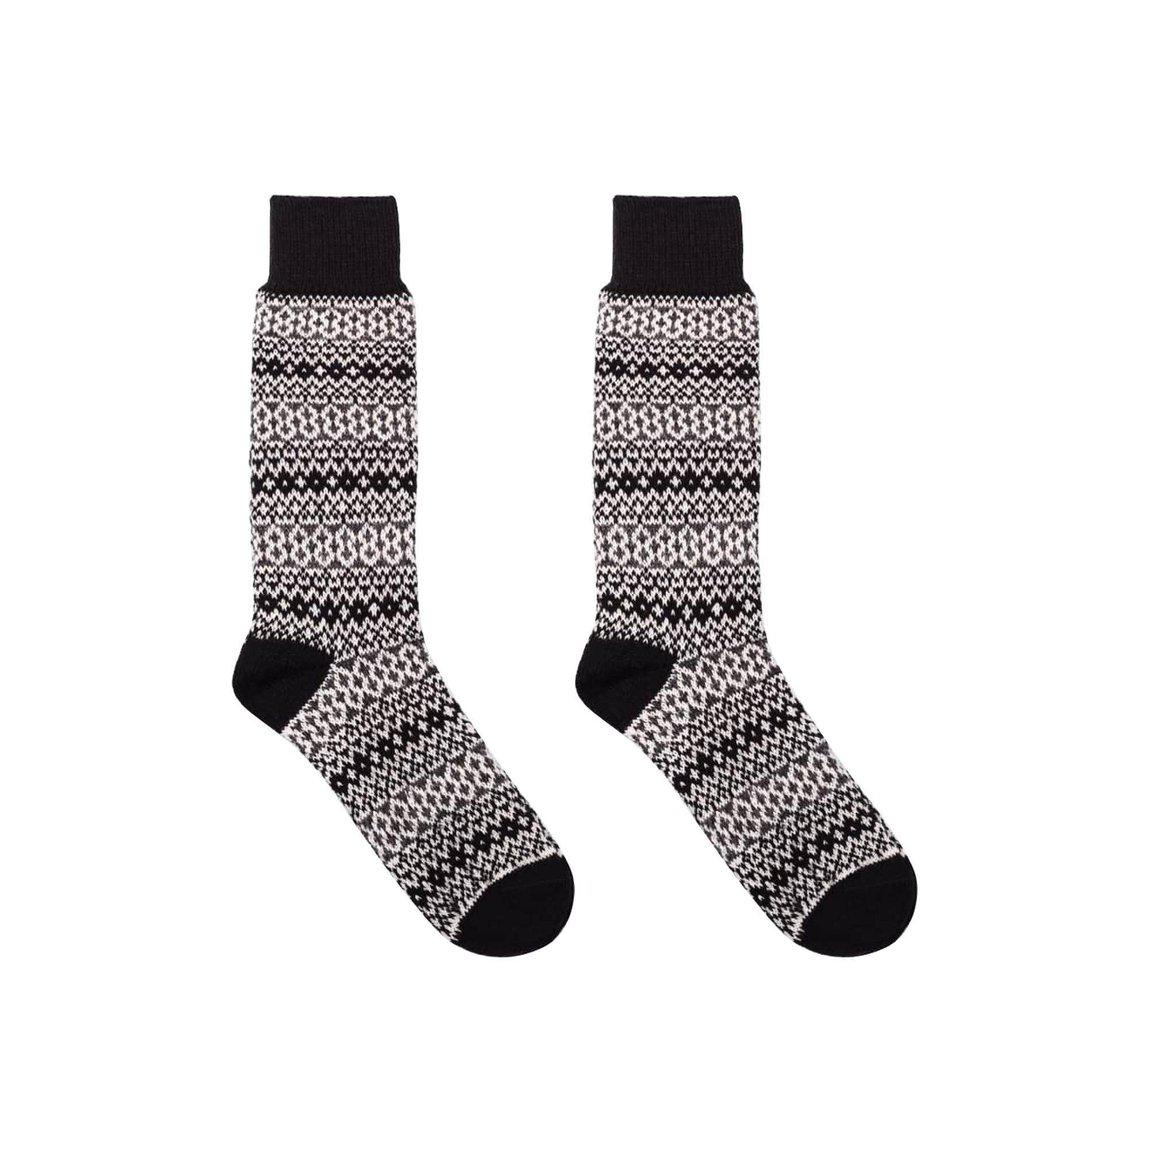 Nordic Wools Merino Torsten Socks - Black - Unisex scandinavian 